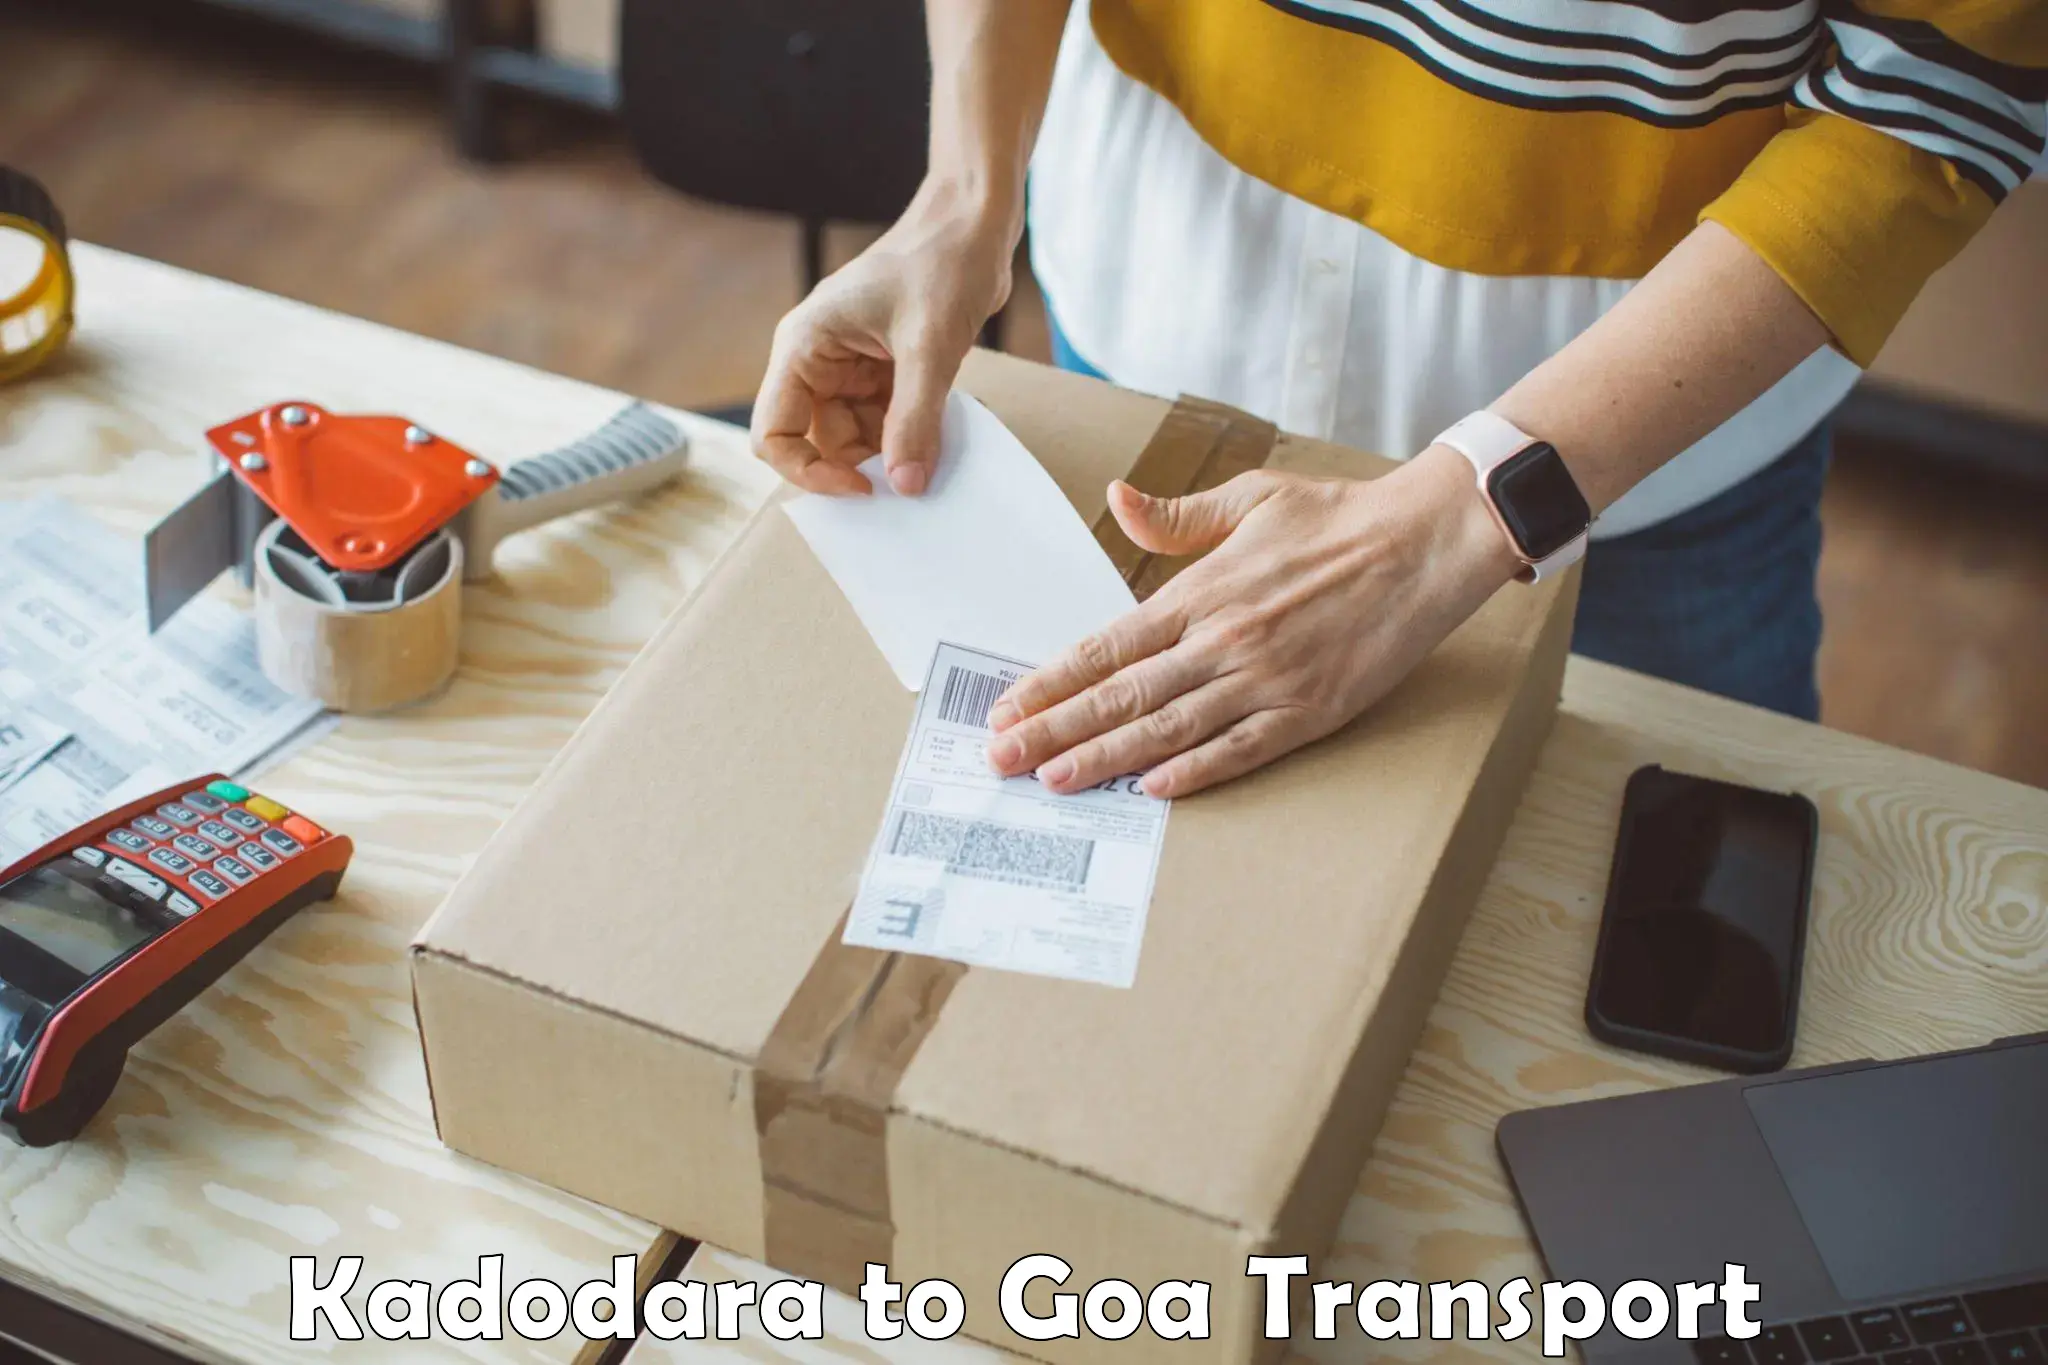 Transport in sharing Kadodara to Goa University